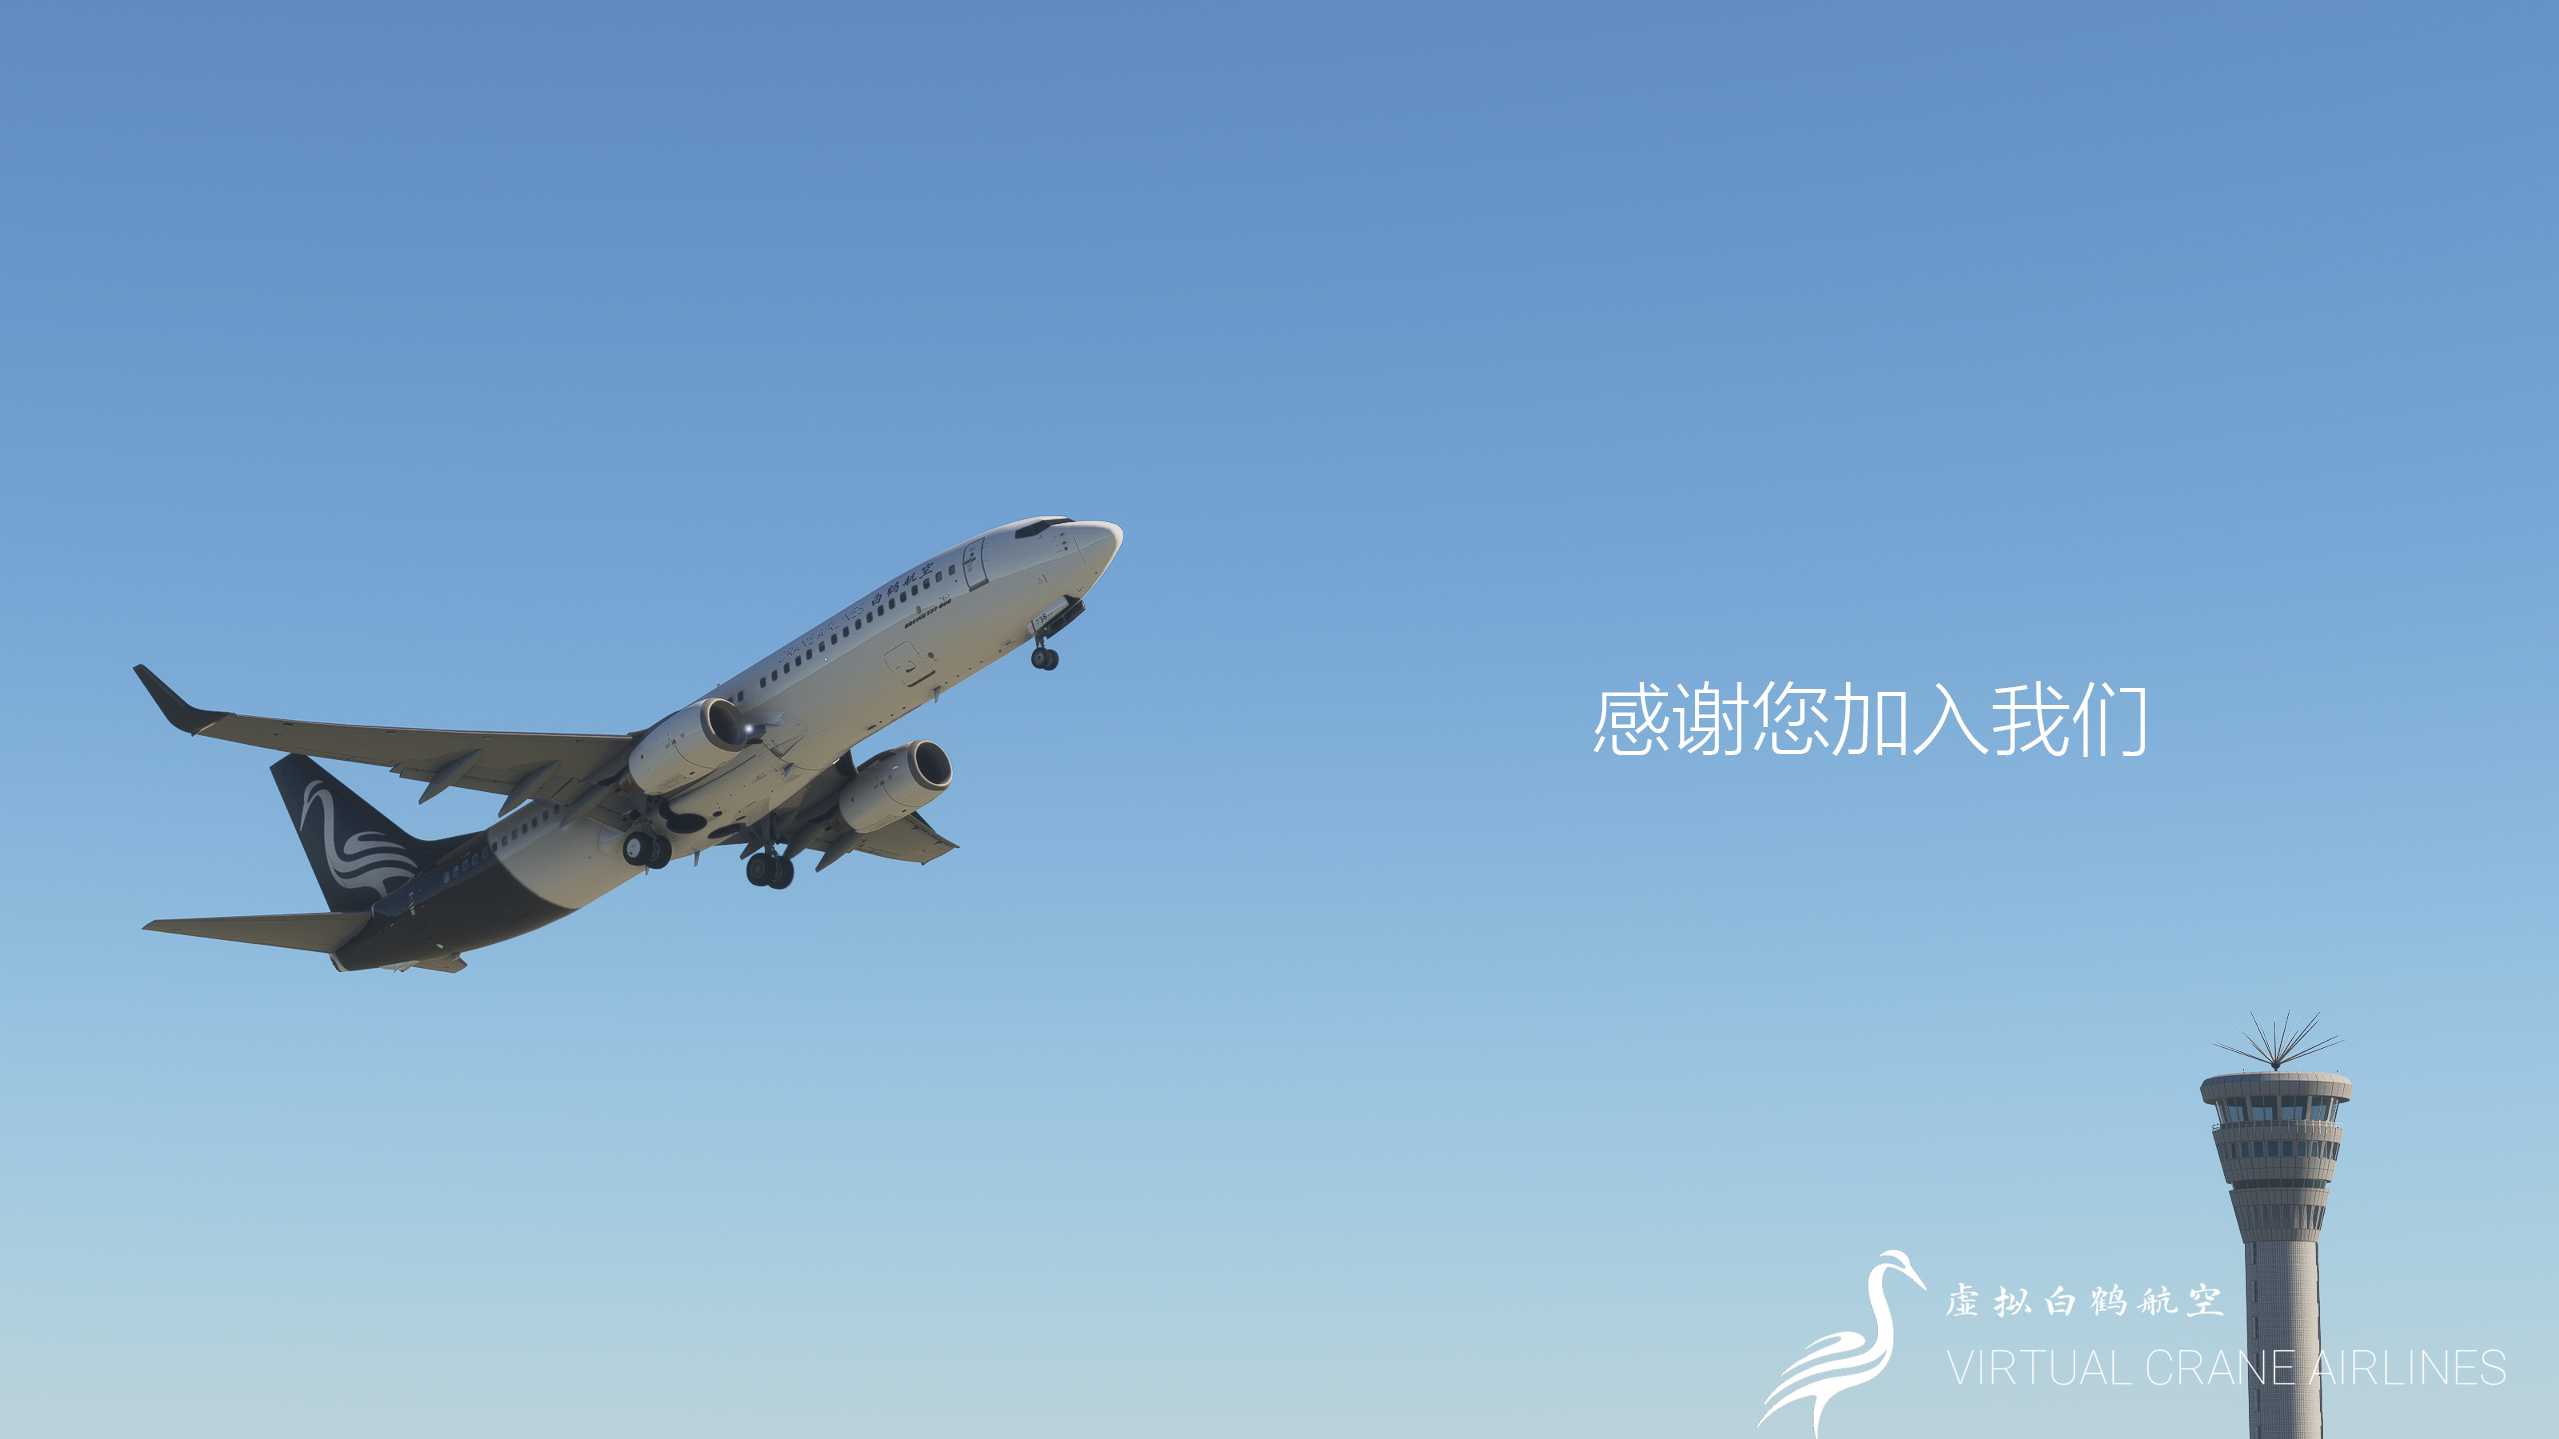 “翱翔云天，白鹤共舞”––虚拟白鹤航空-7716 